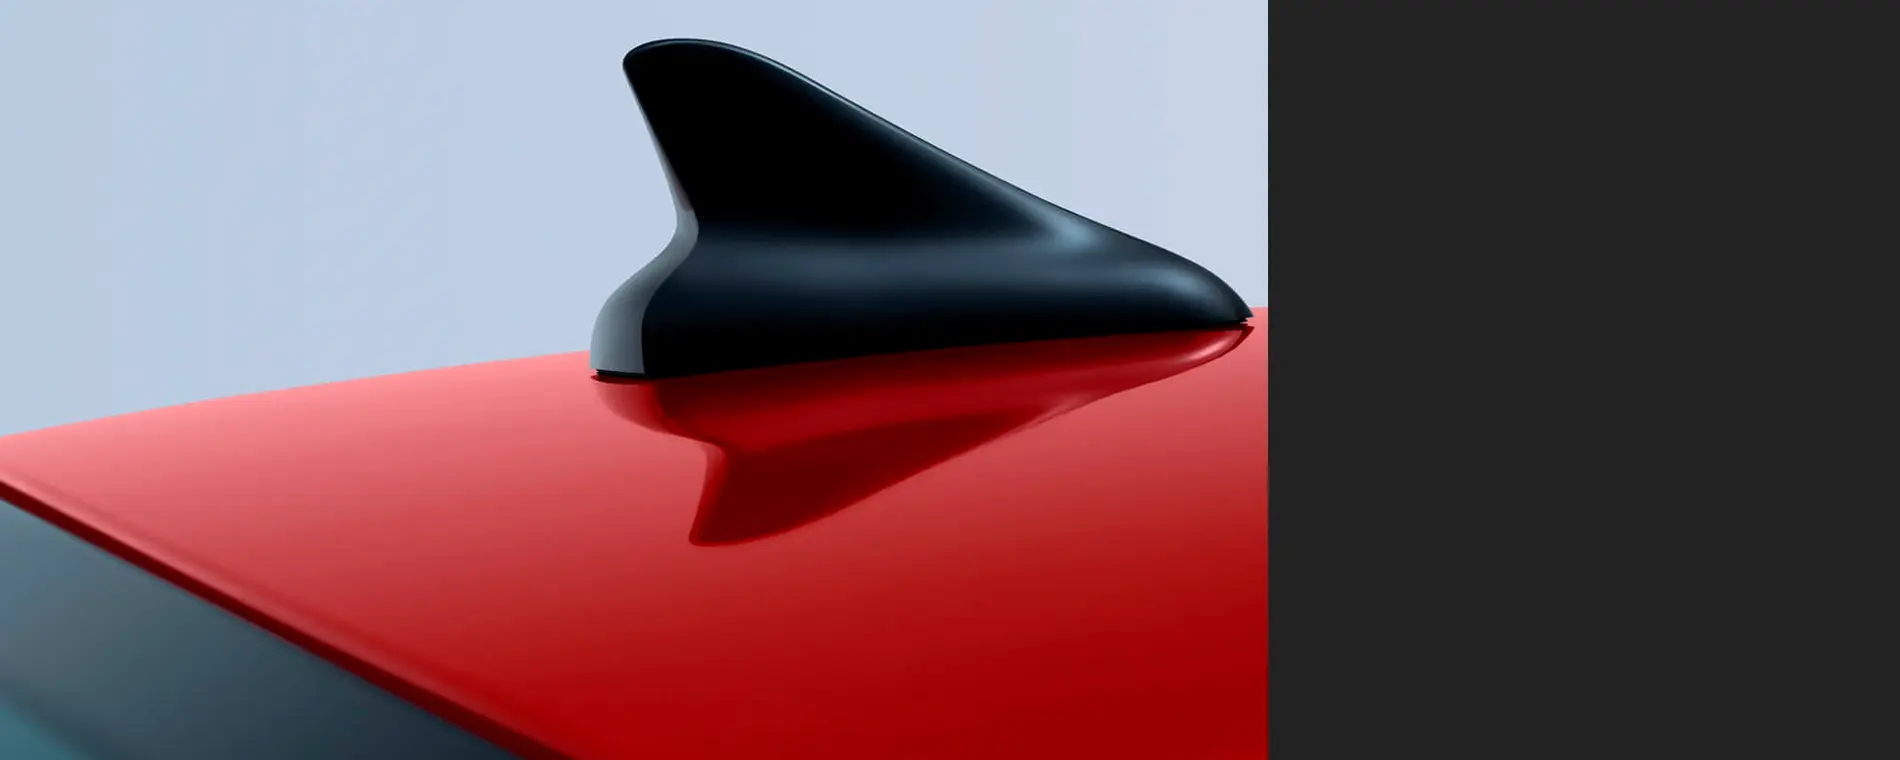 Antena 'Aleta de Tiburón' en color negro brillante